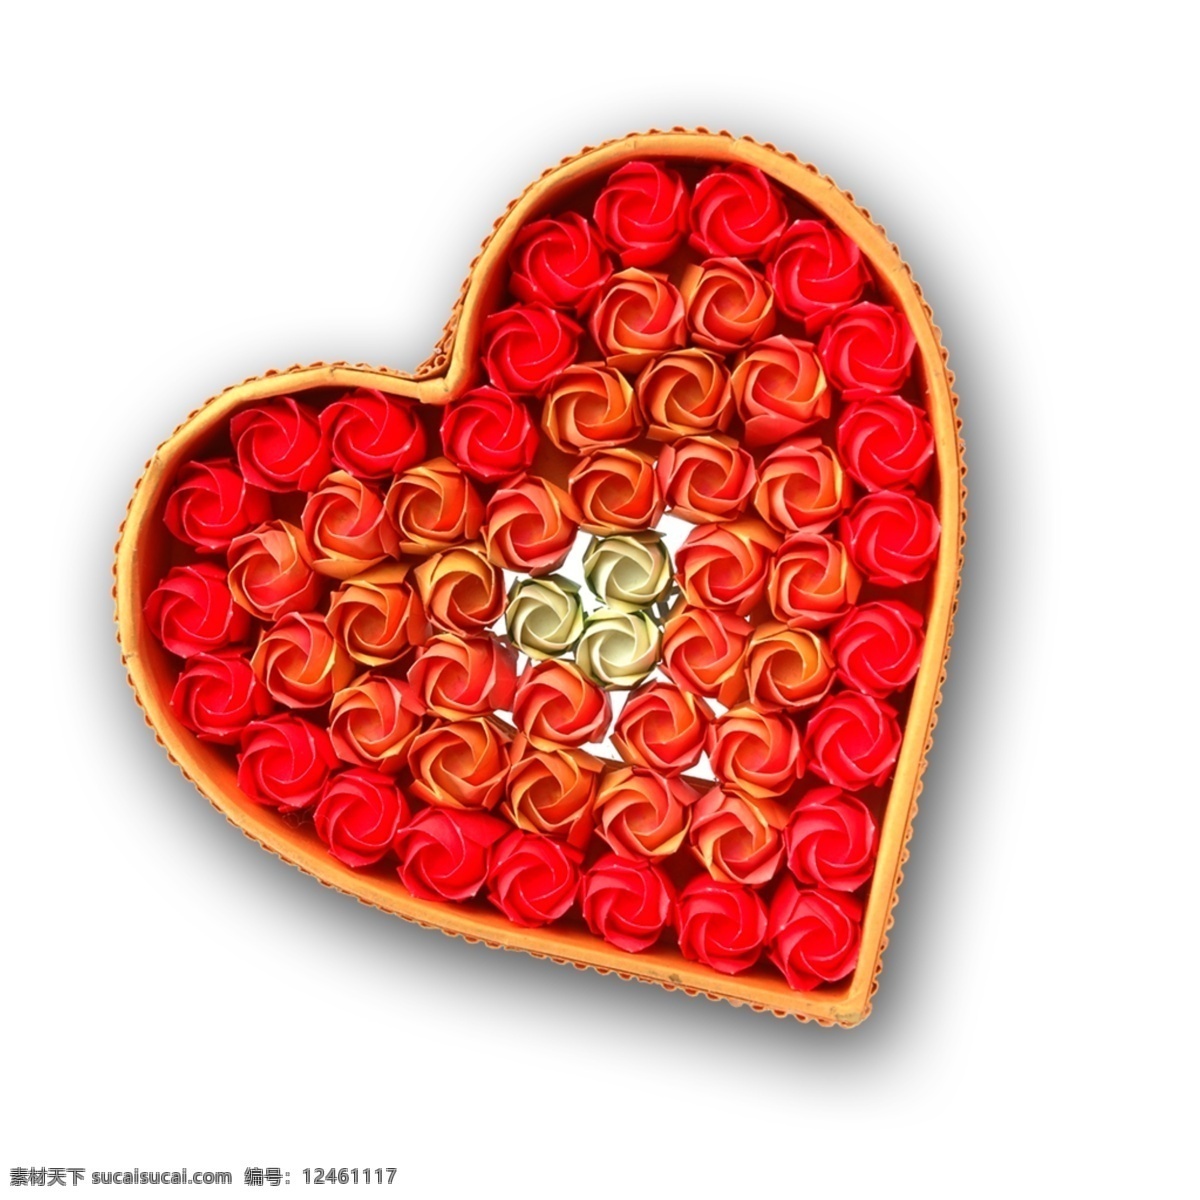 爱心鲜花 背景素材 底纹边框 高清图片 爱心 设计素材 模板下载 爱心素材 红心 心形 浪漫 爱情 情人节